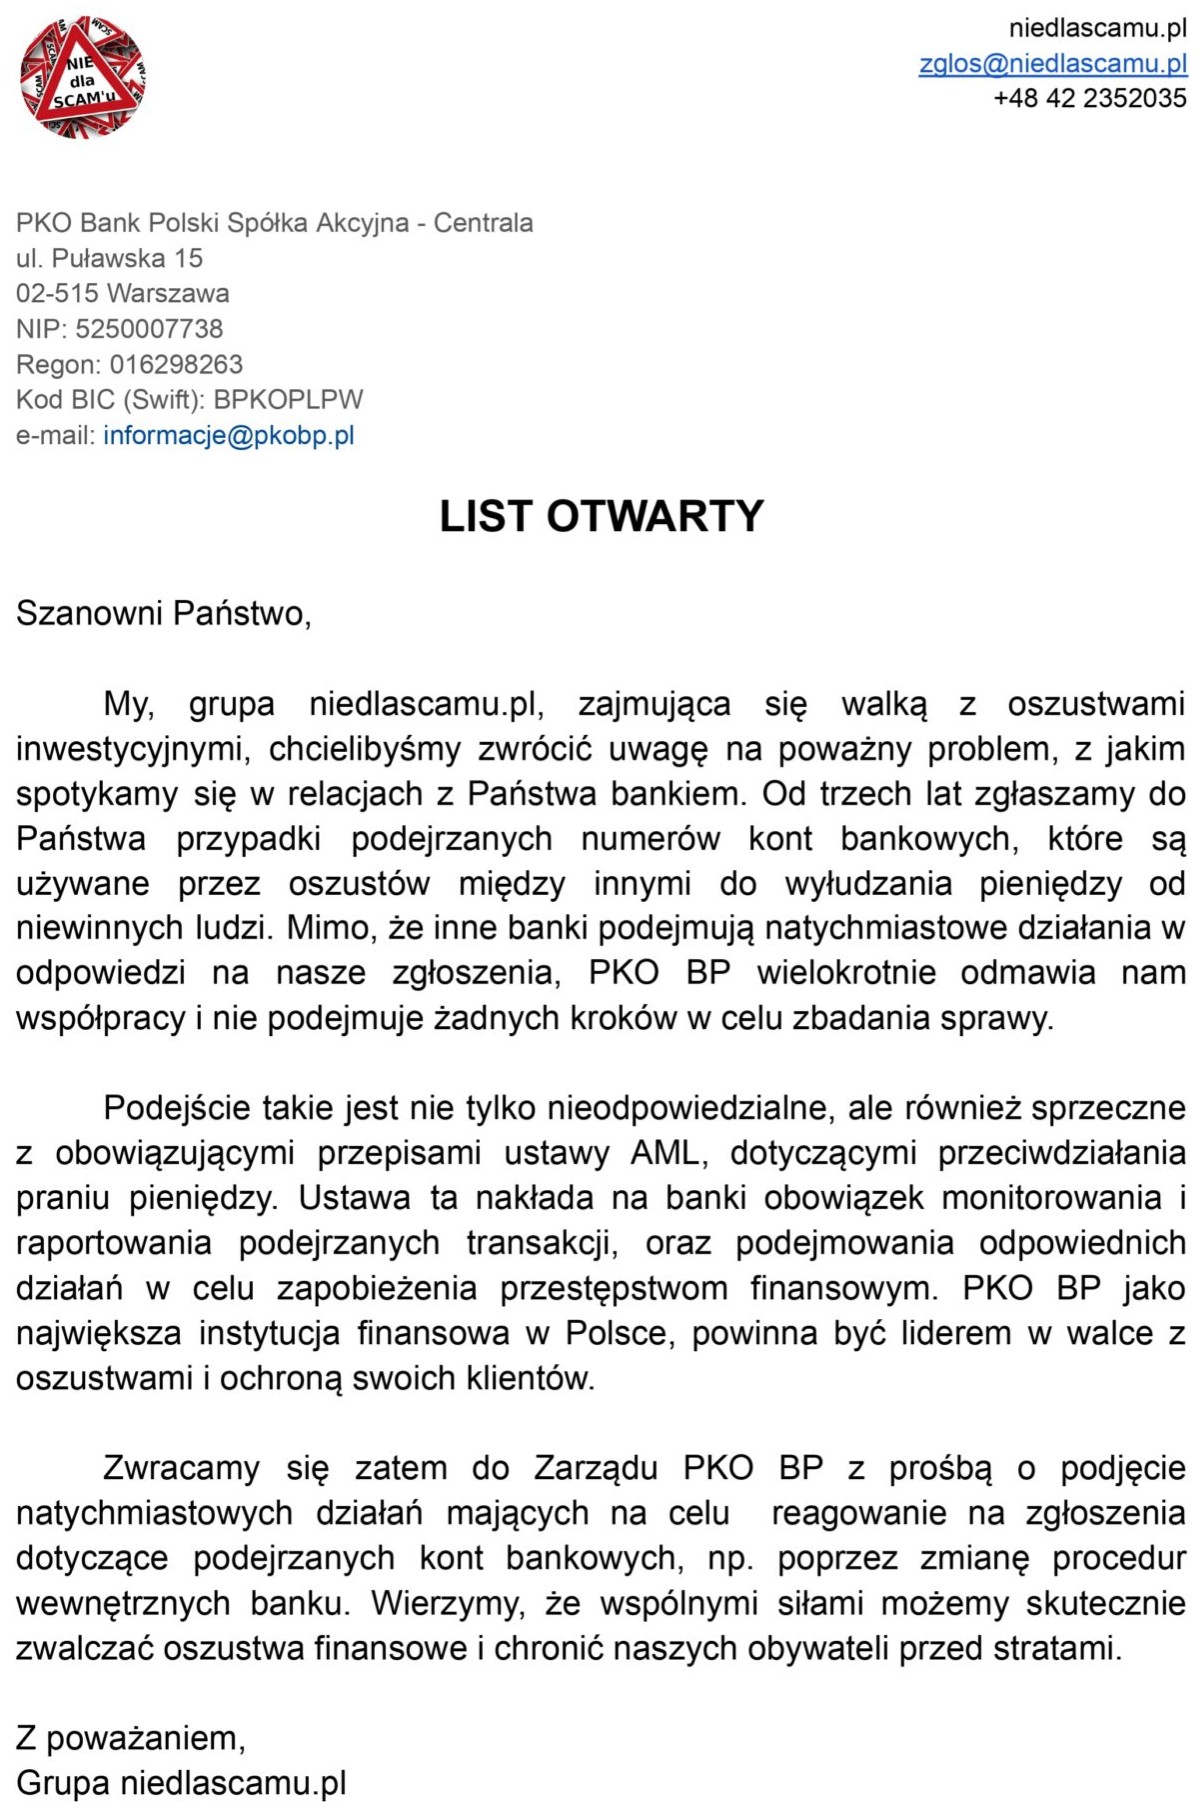 PKO BP niedlascamu.pl list otwarty